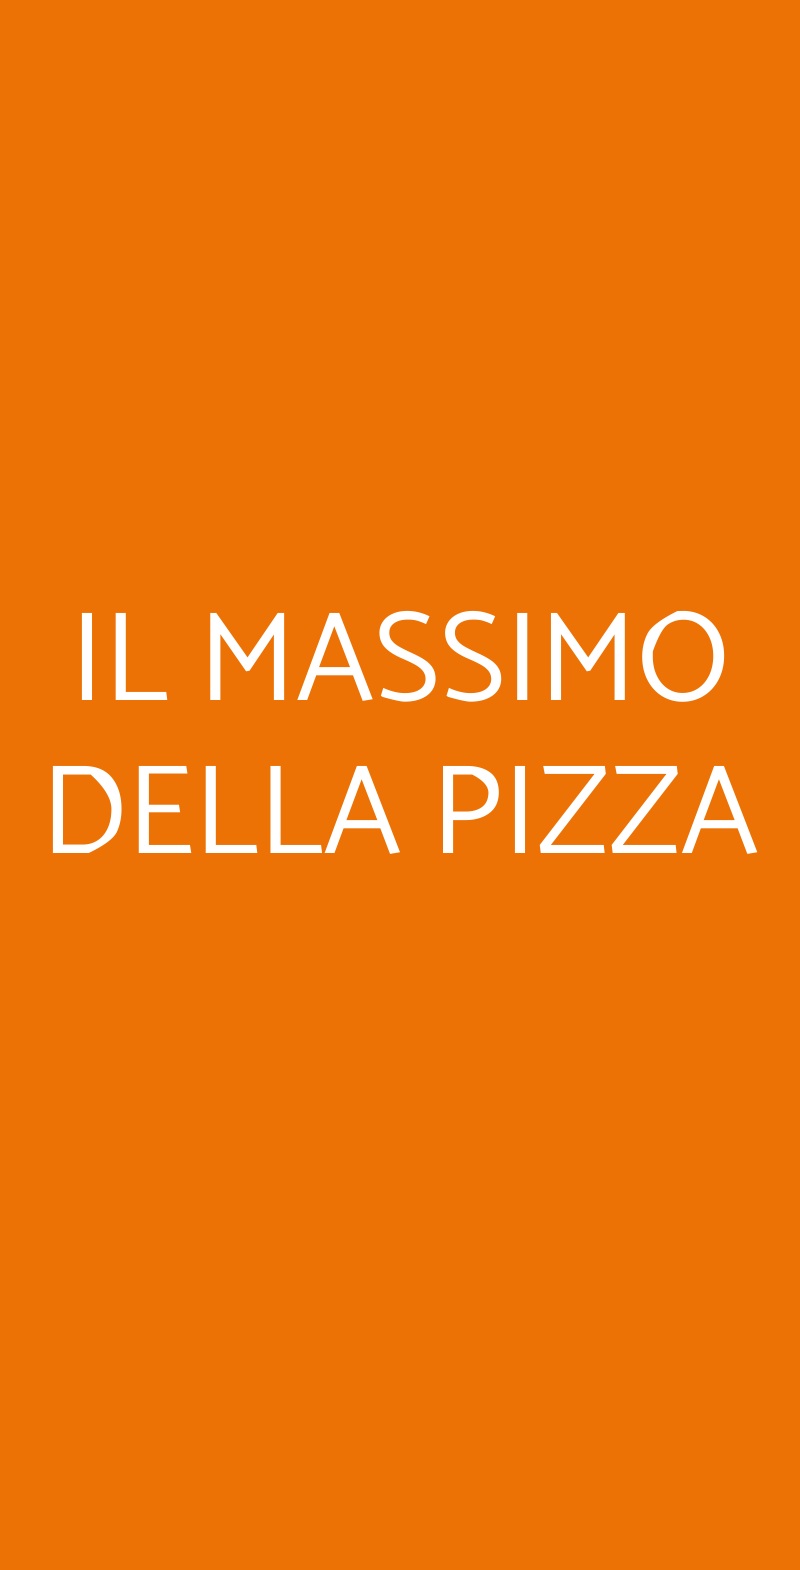 IL MASSIMO DELLA PIZZA Napoli menù 1 pagina